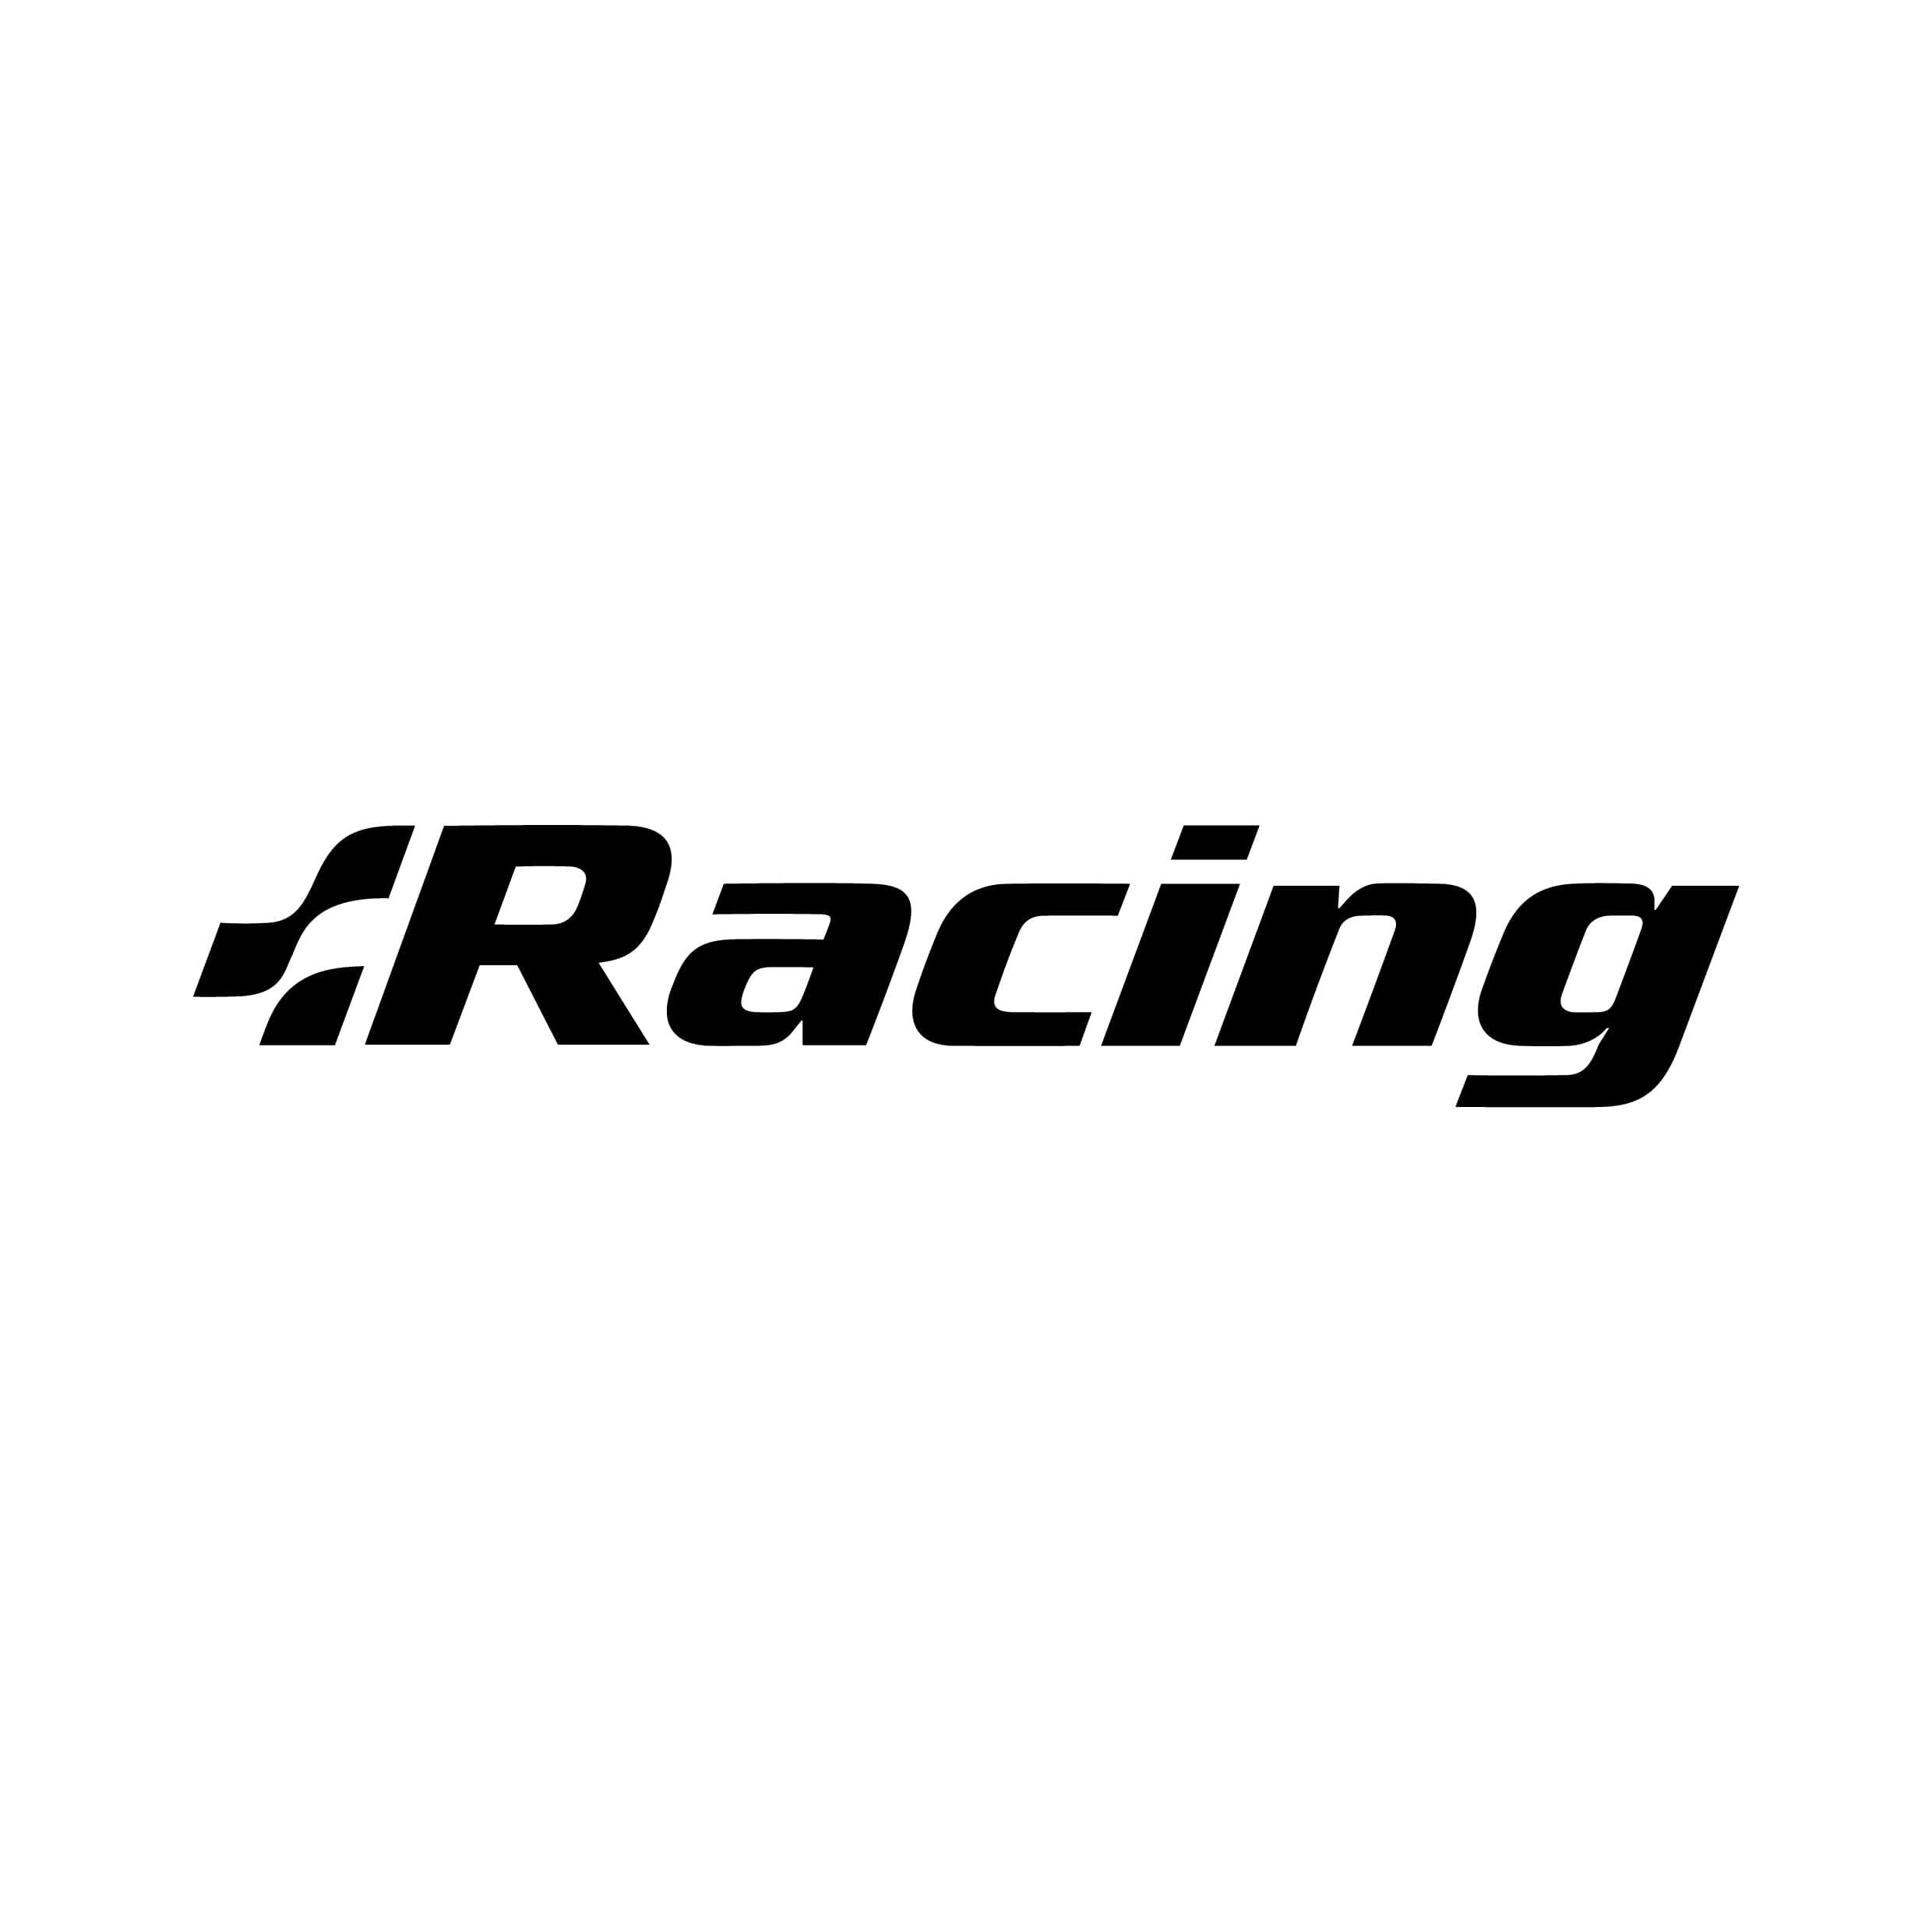 stickers-volkswagen-racing-ref13-autocollant-voiture-sticker-auto-autocollants-decals-sponsors-racing-tuning-sport-logo-min